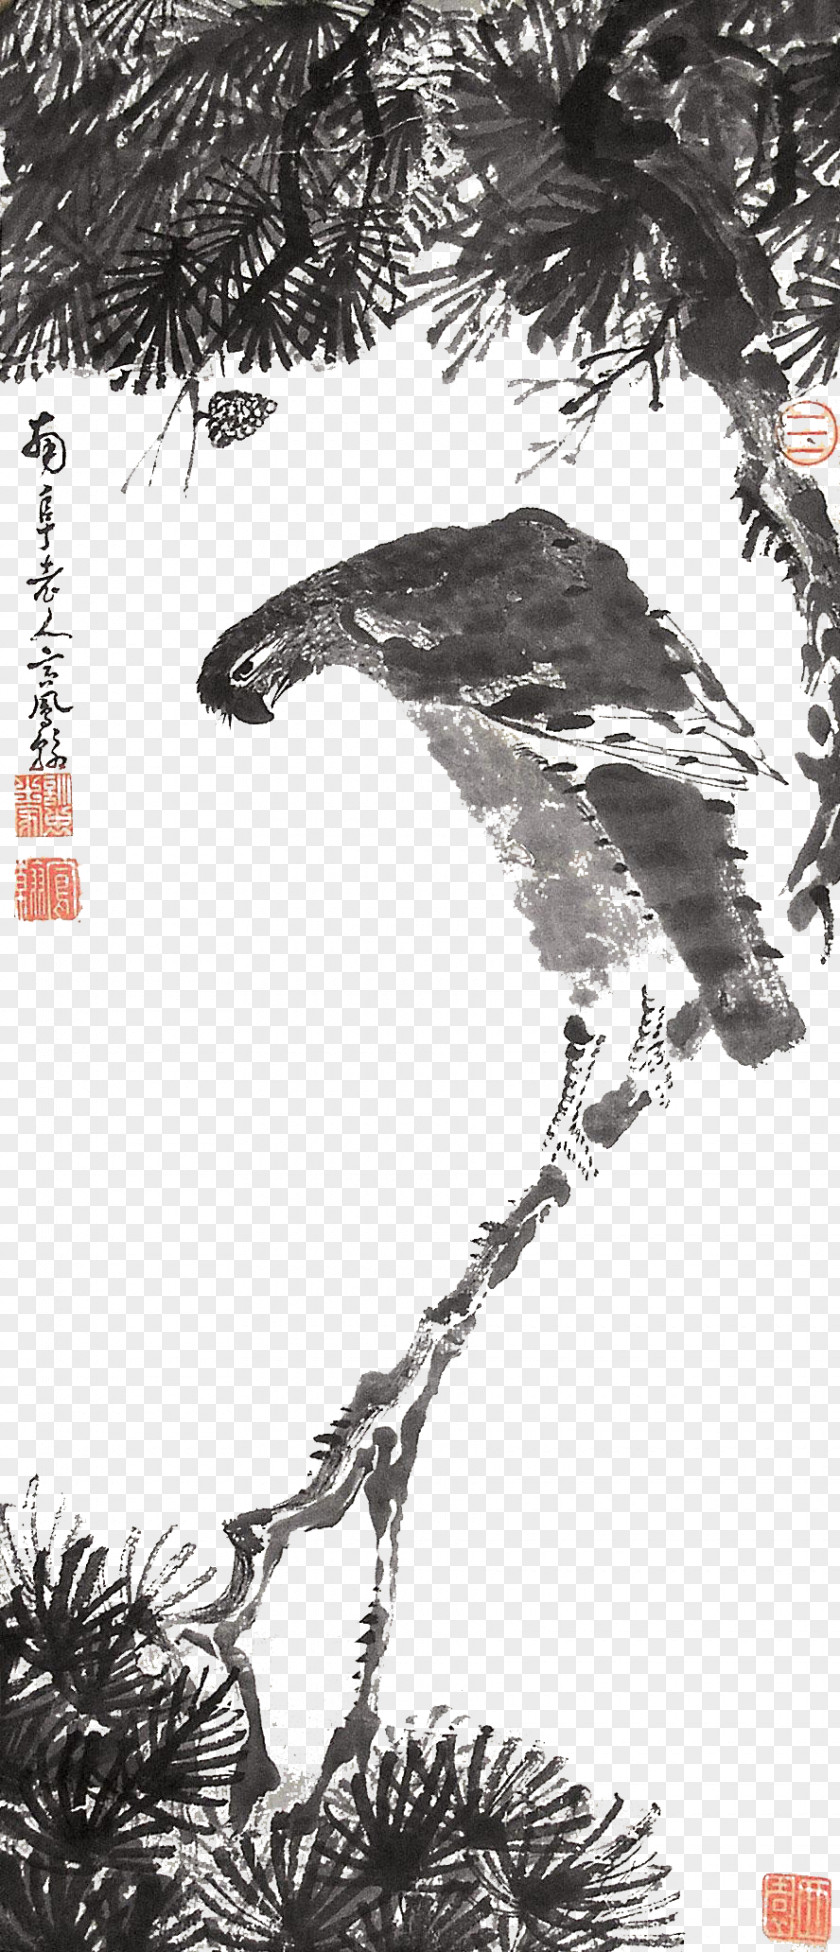 Eagle Ink Material Graphic Design Download Illustration PNG